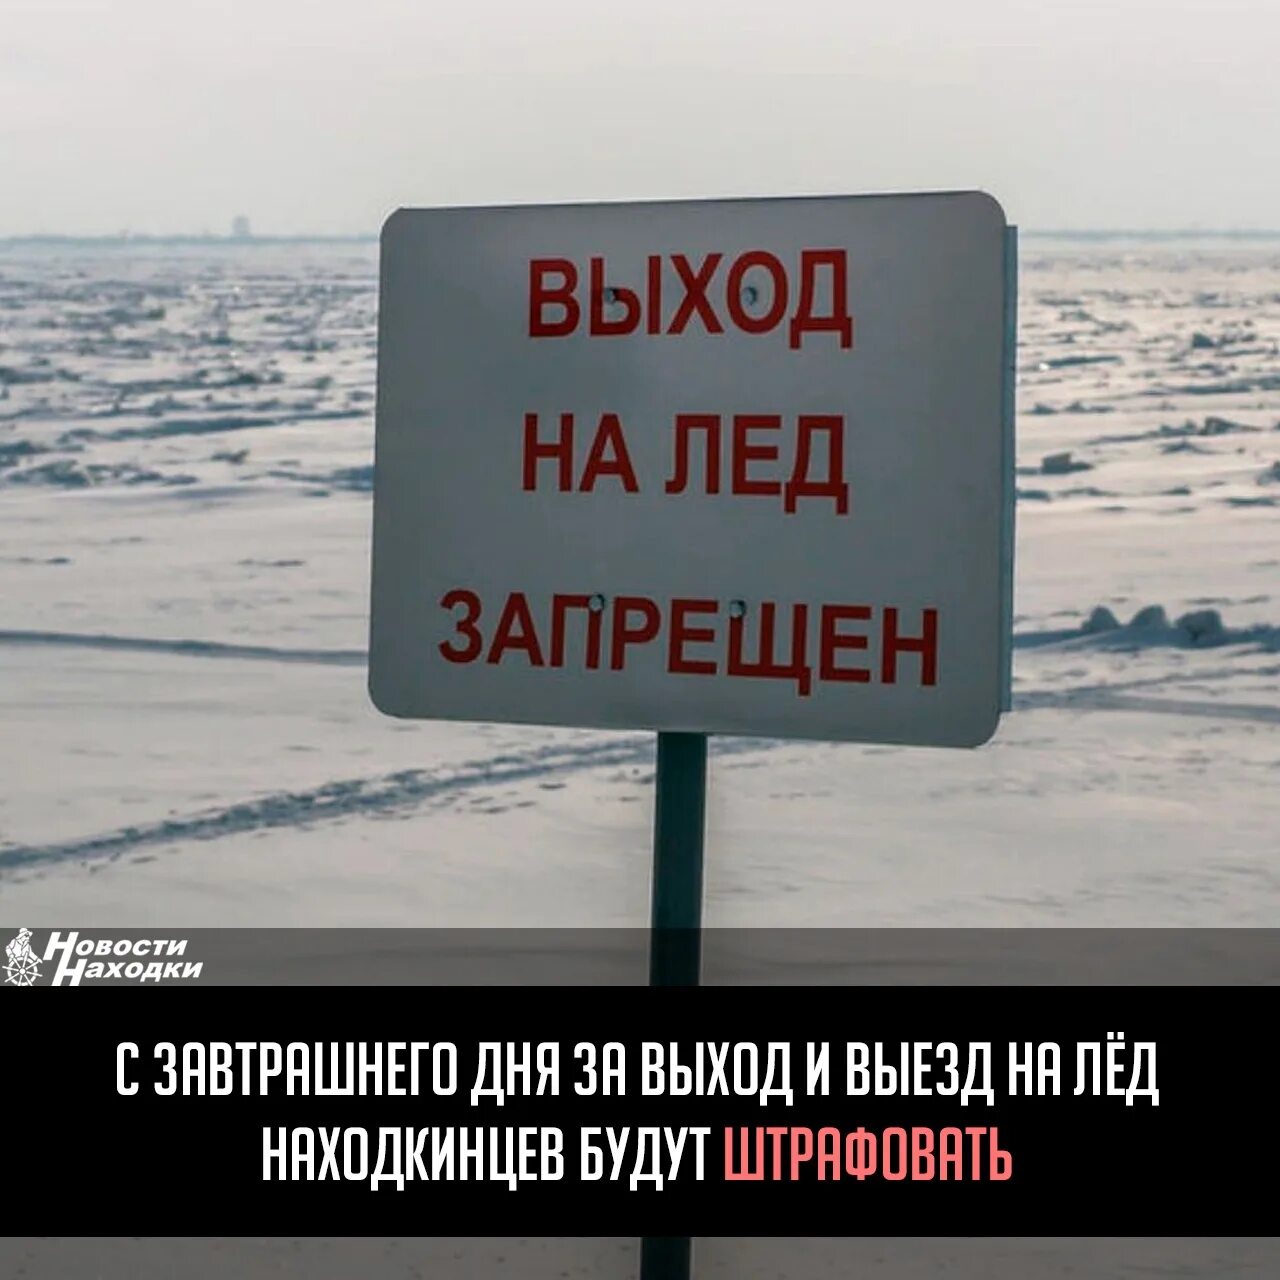 Выход на лед запрещен. Выезд на лед запрещен. Выход выезд на лед запрещен табличка. Тонкий лед.